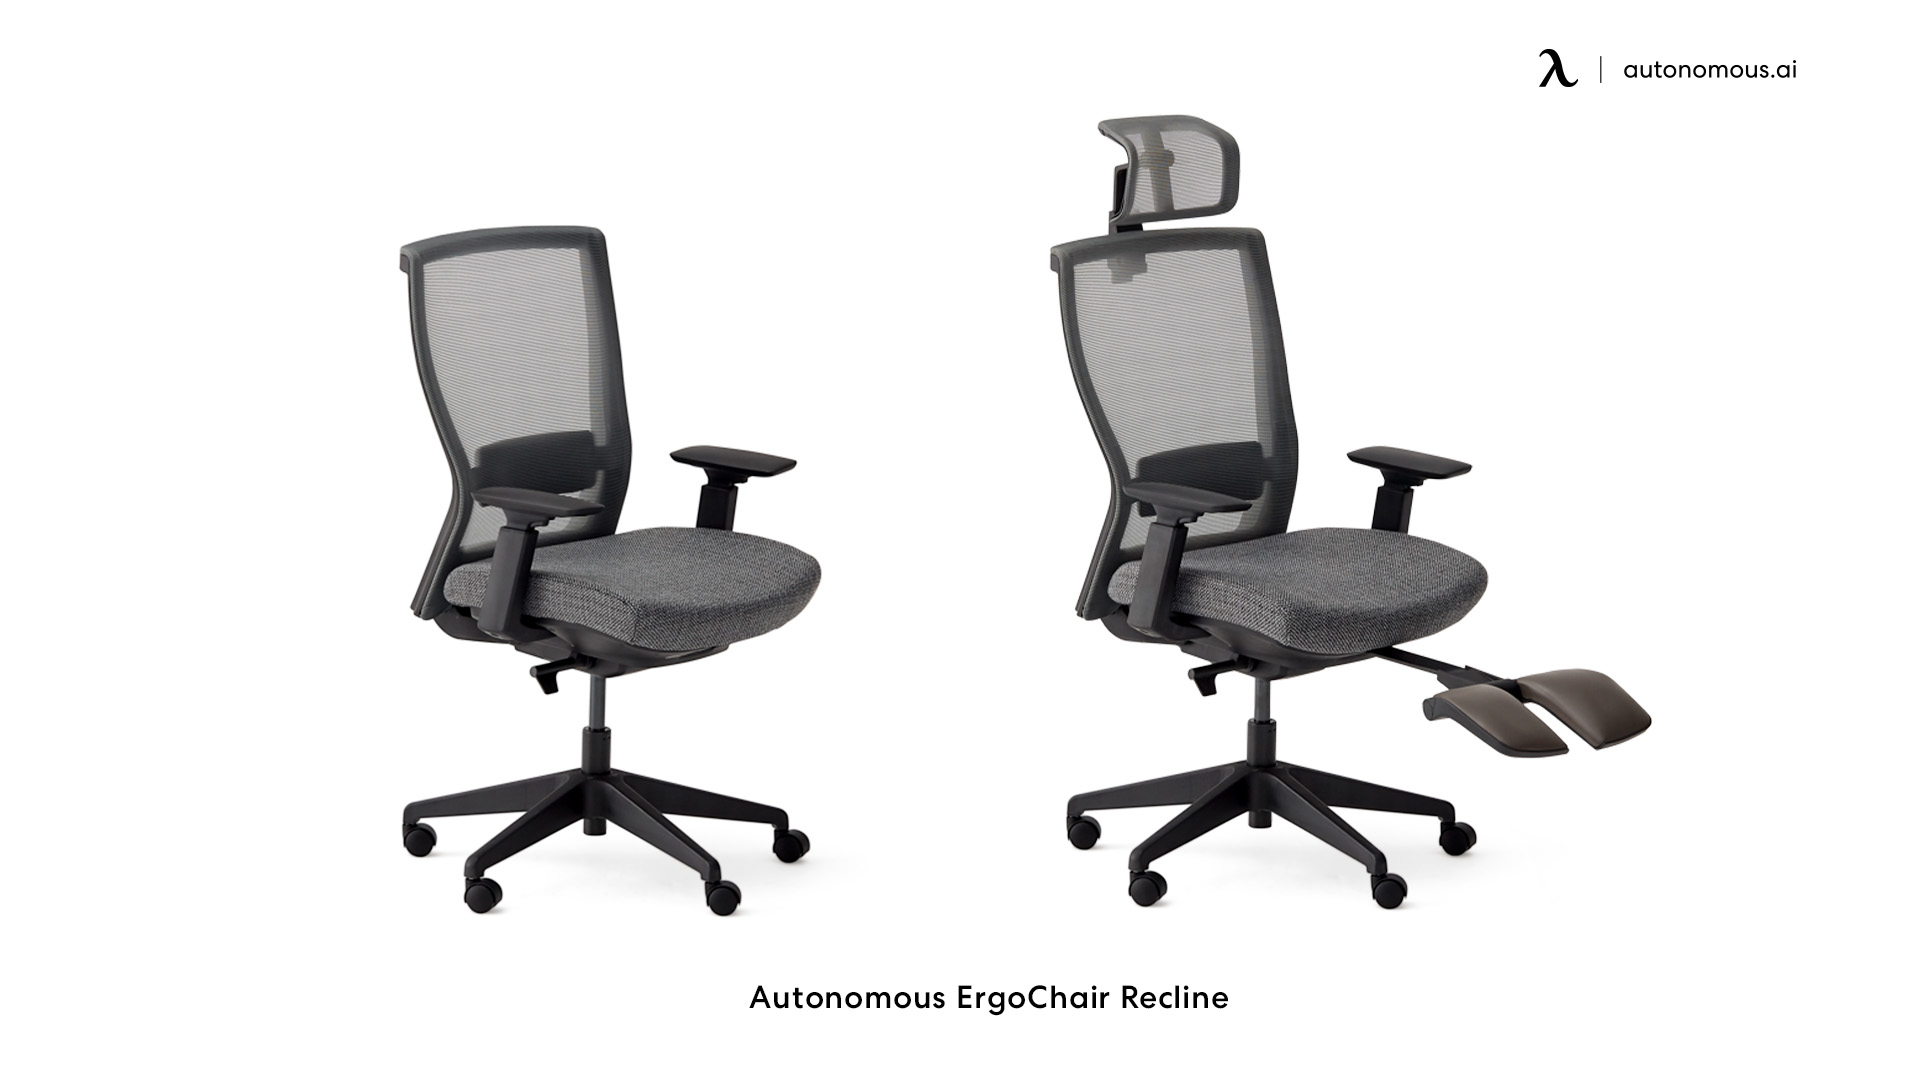 ErgoChair Recline is a reclining ergonomic chair